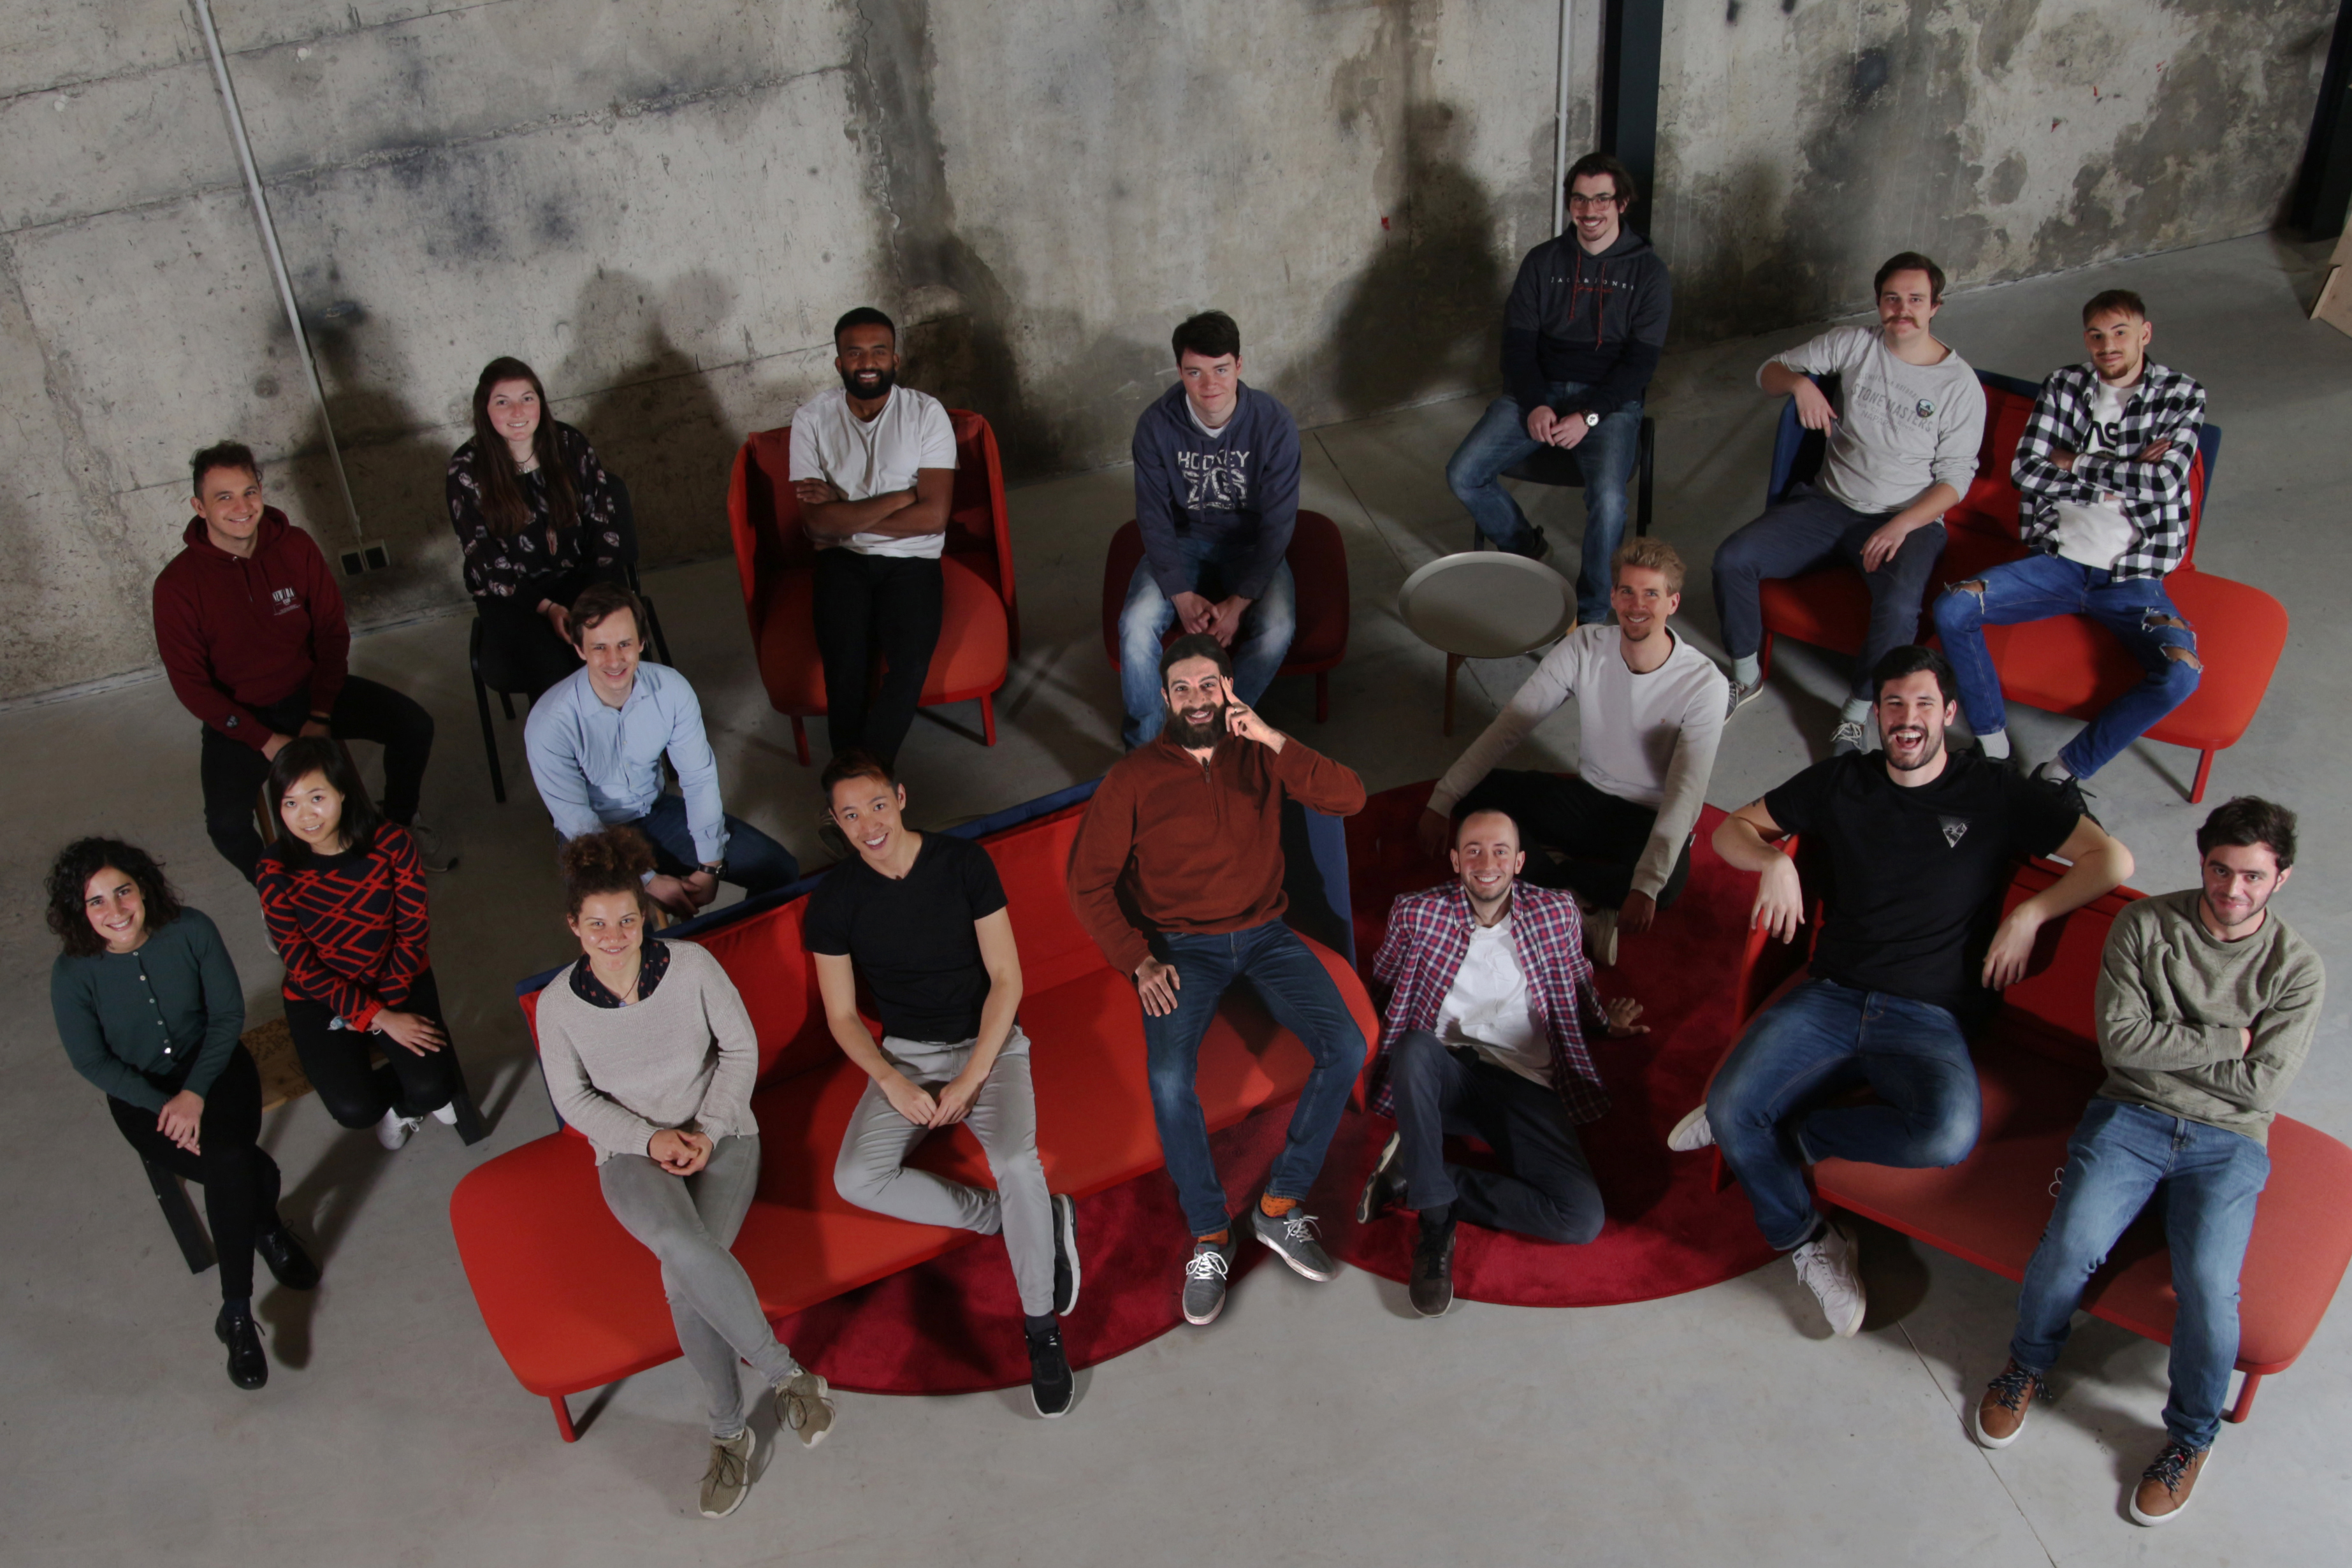 Gruppenbild der Alpha-Protein GmbH: 17 Personen sitzen auf roten, gepolsterten Bänken und Sesseln vor einer Sichtbeton-Wand.